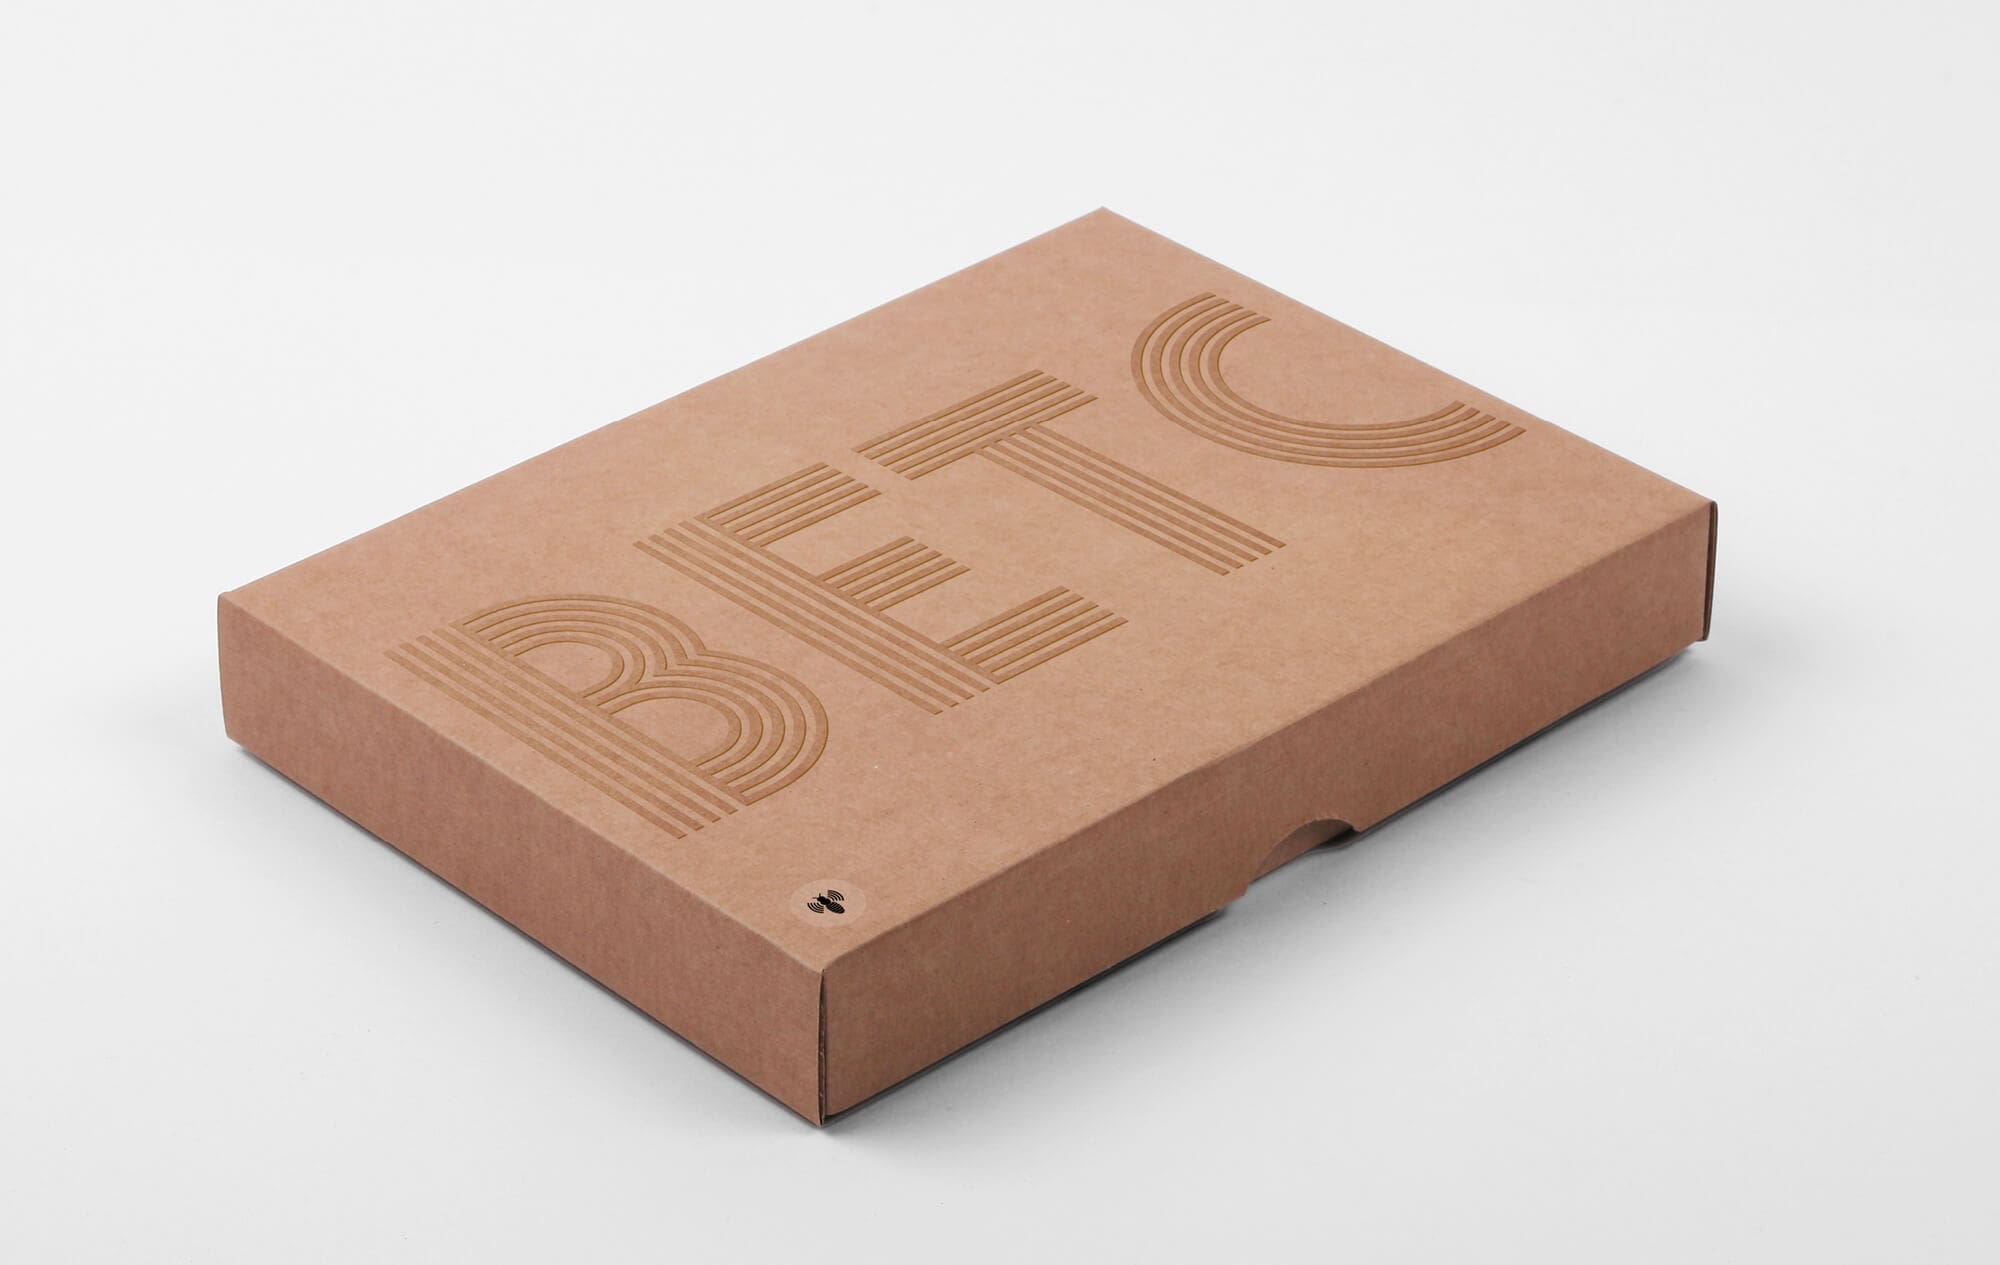 Boite de présentation en carton gaufré du logo de l'agence de publicité BETC, design IchetKar